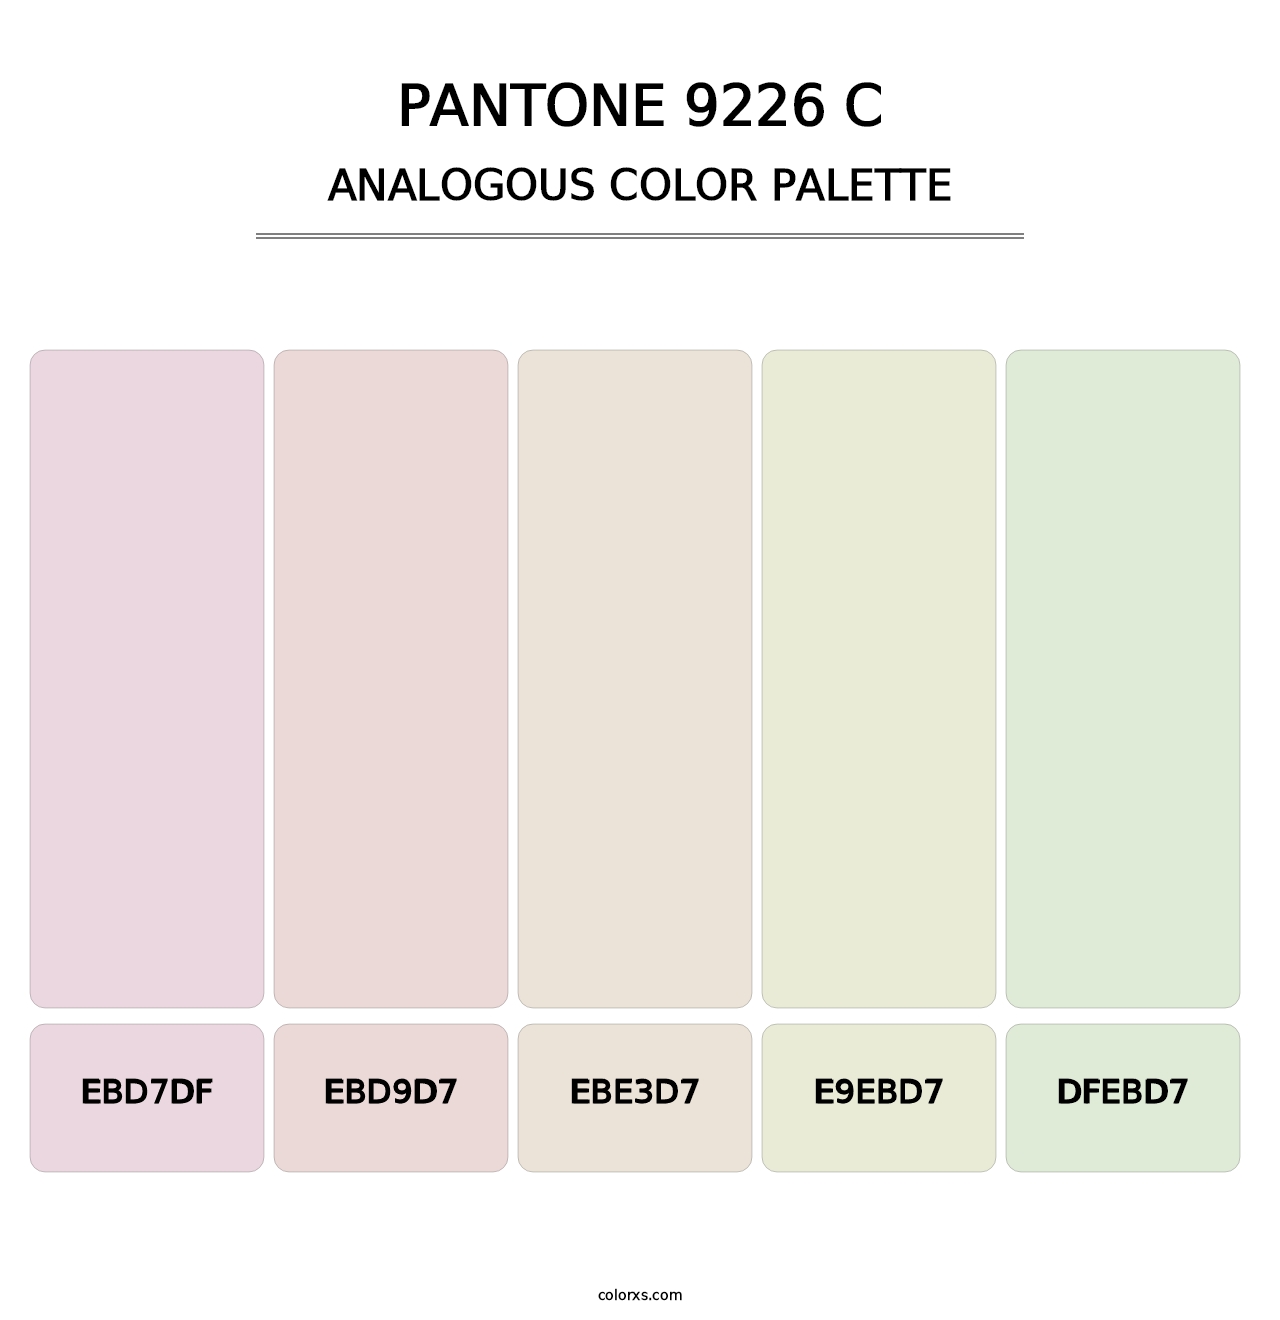 PANTONE 9226 C - Analogous Color Palette